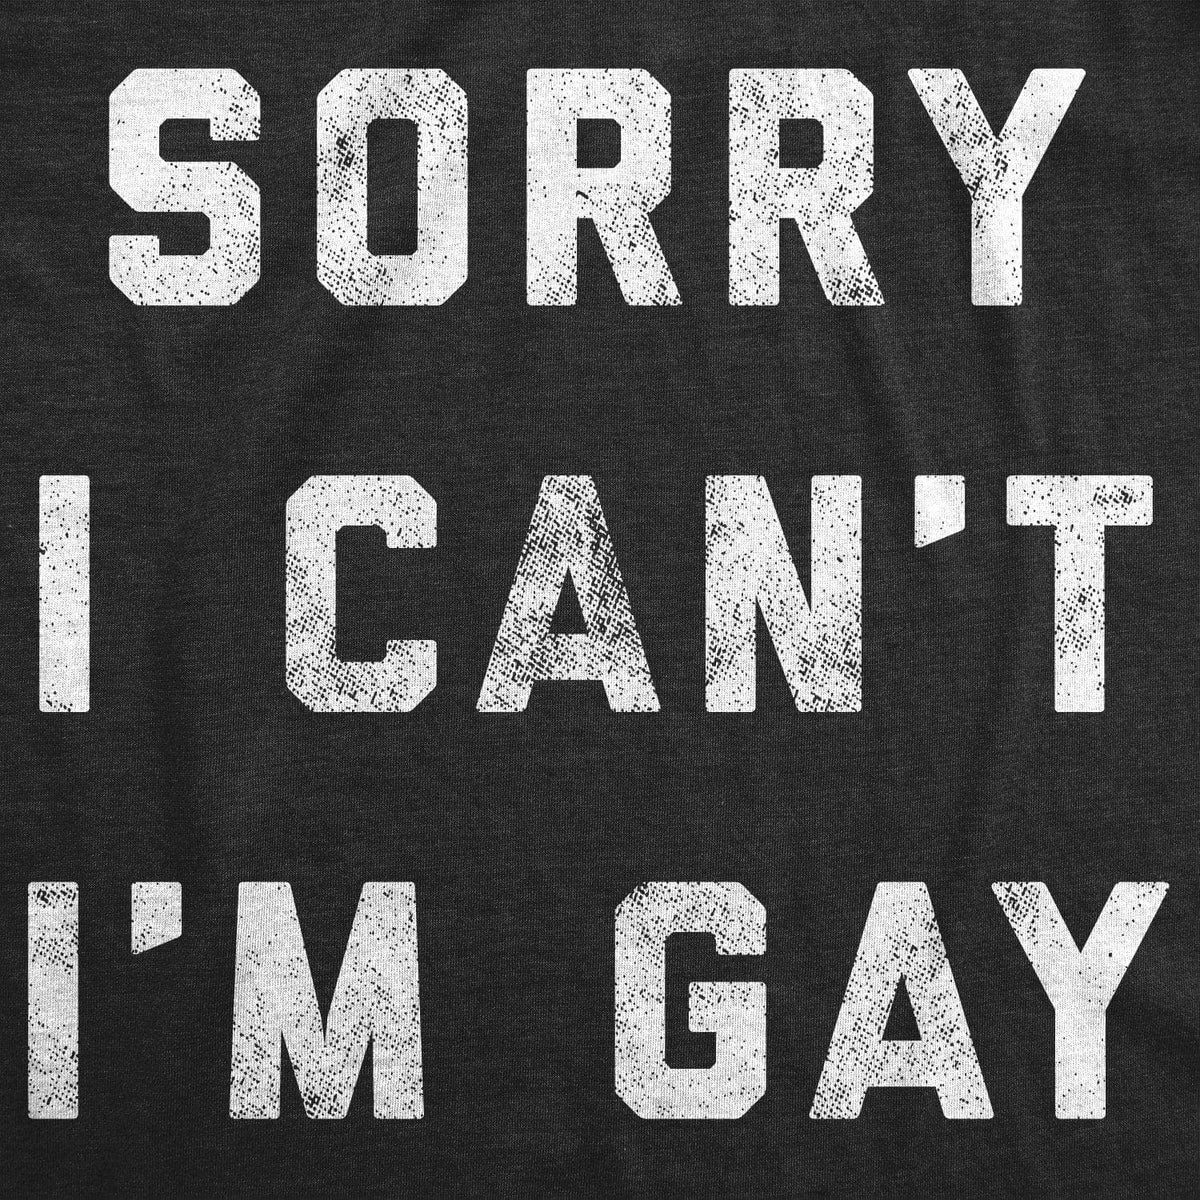 Sorry I Can&#39;t I&#39;m Gay Men&#39;s Tshirt  -  Crazy Dog T-Shirts